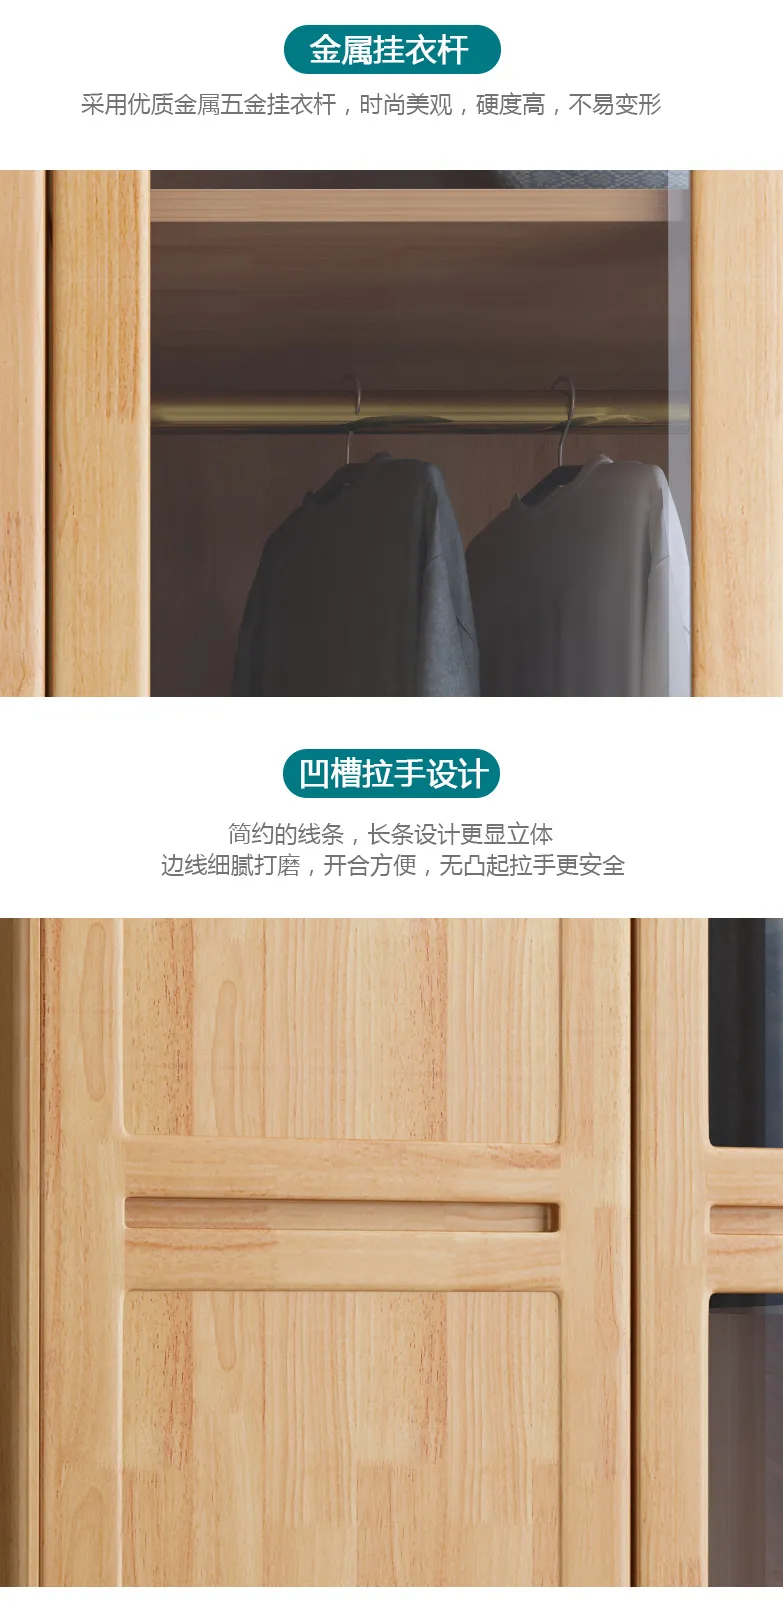 华松居 玻璃门实木衣柜家用卧室现代简约木质衣橱 JY-03-C(图5)